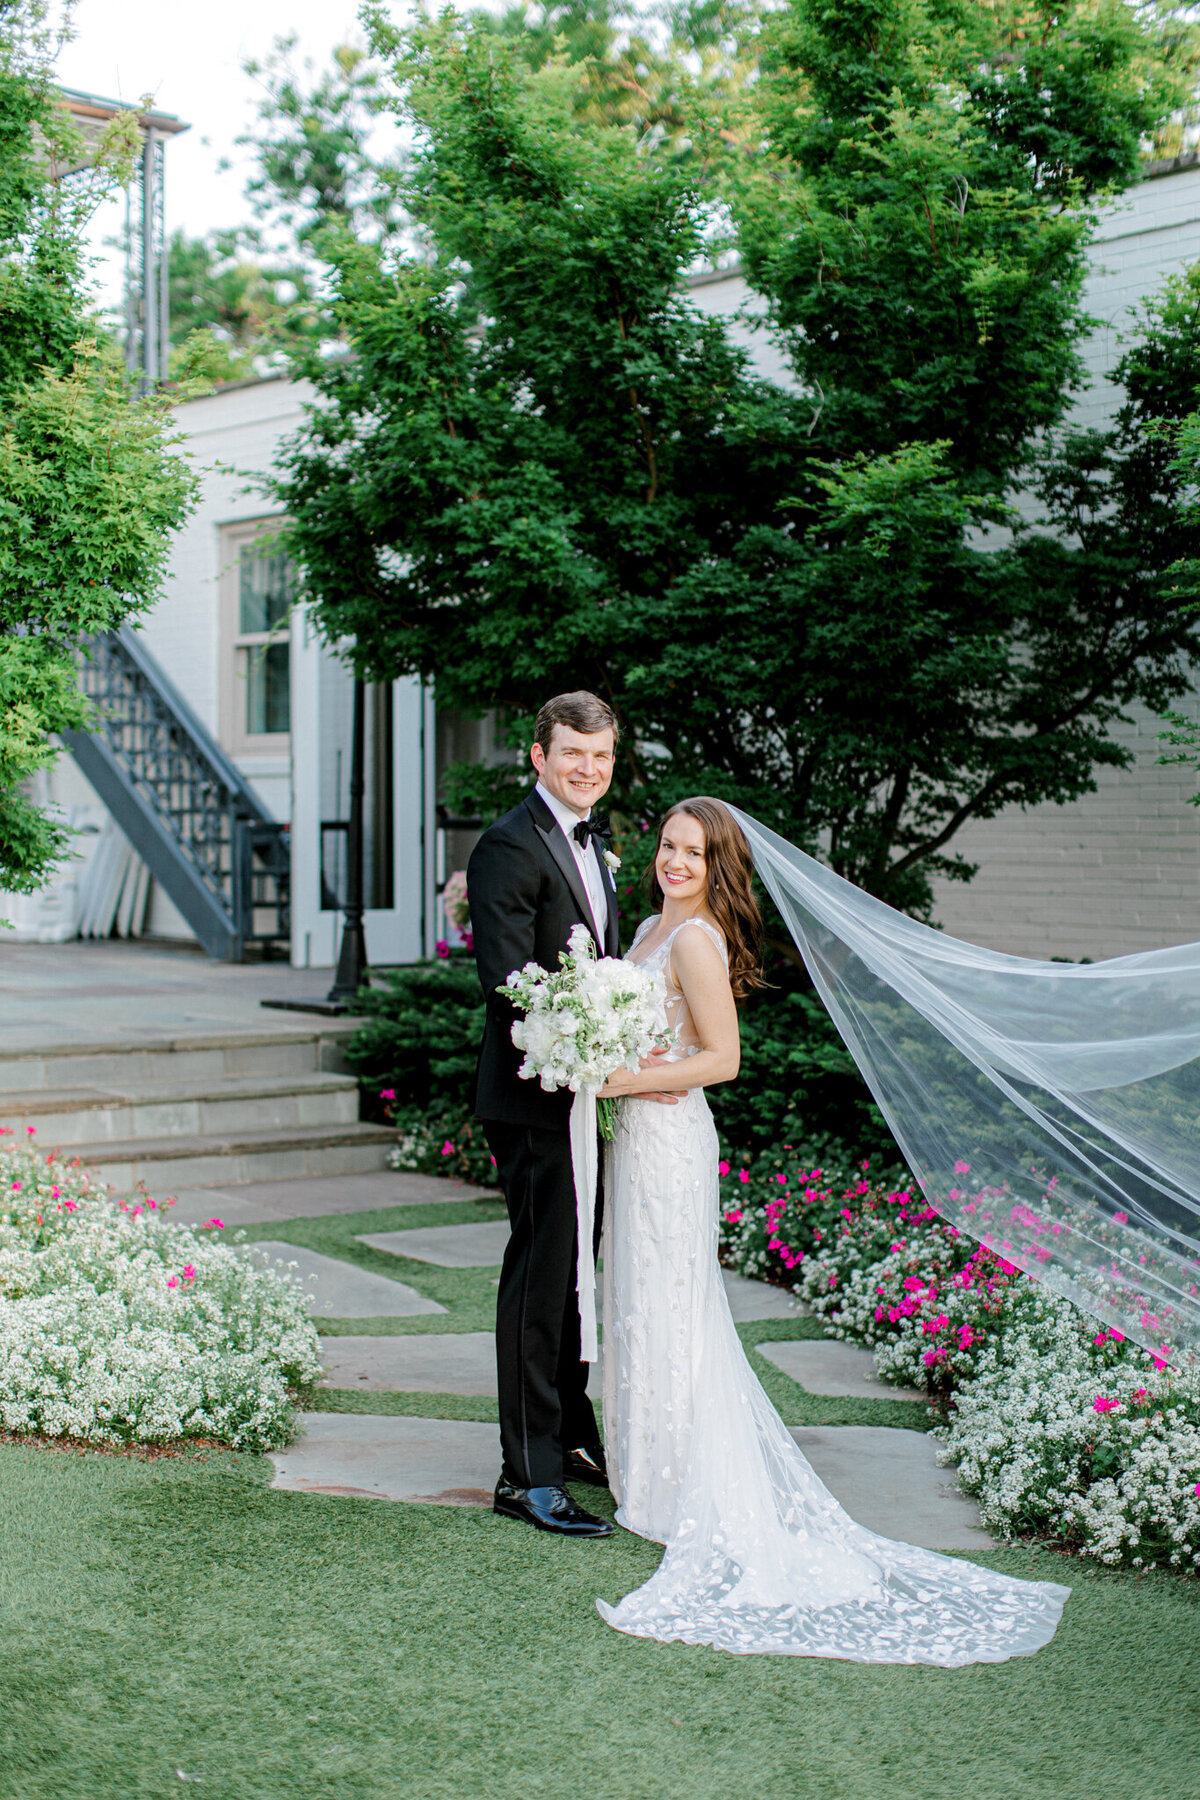 Gena & Matt's Wedding at the Dallas Arboretum | Dallas Wedding Photographer | Sami Kathryn Photography-174